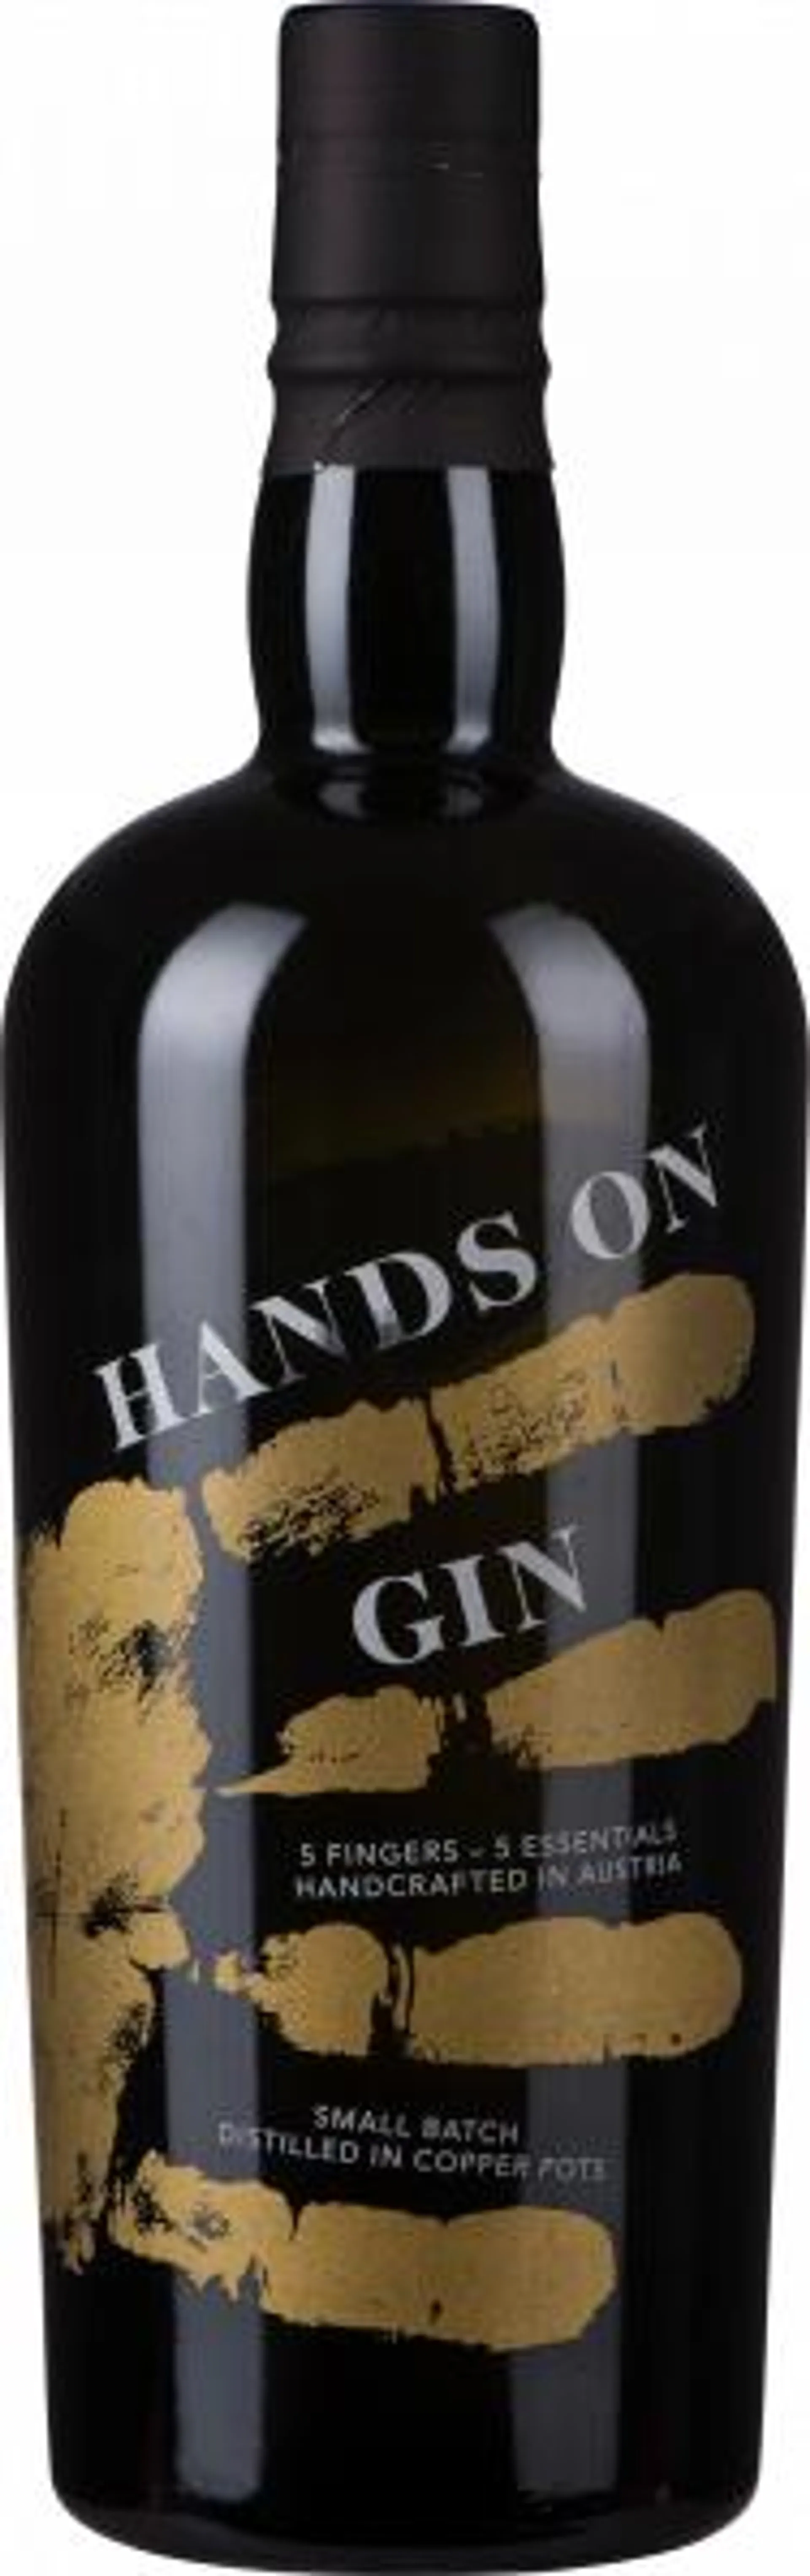 Hands On Gin 0,7 Liter